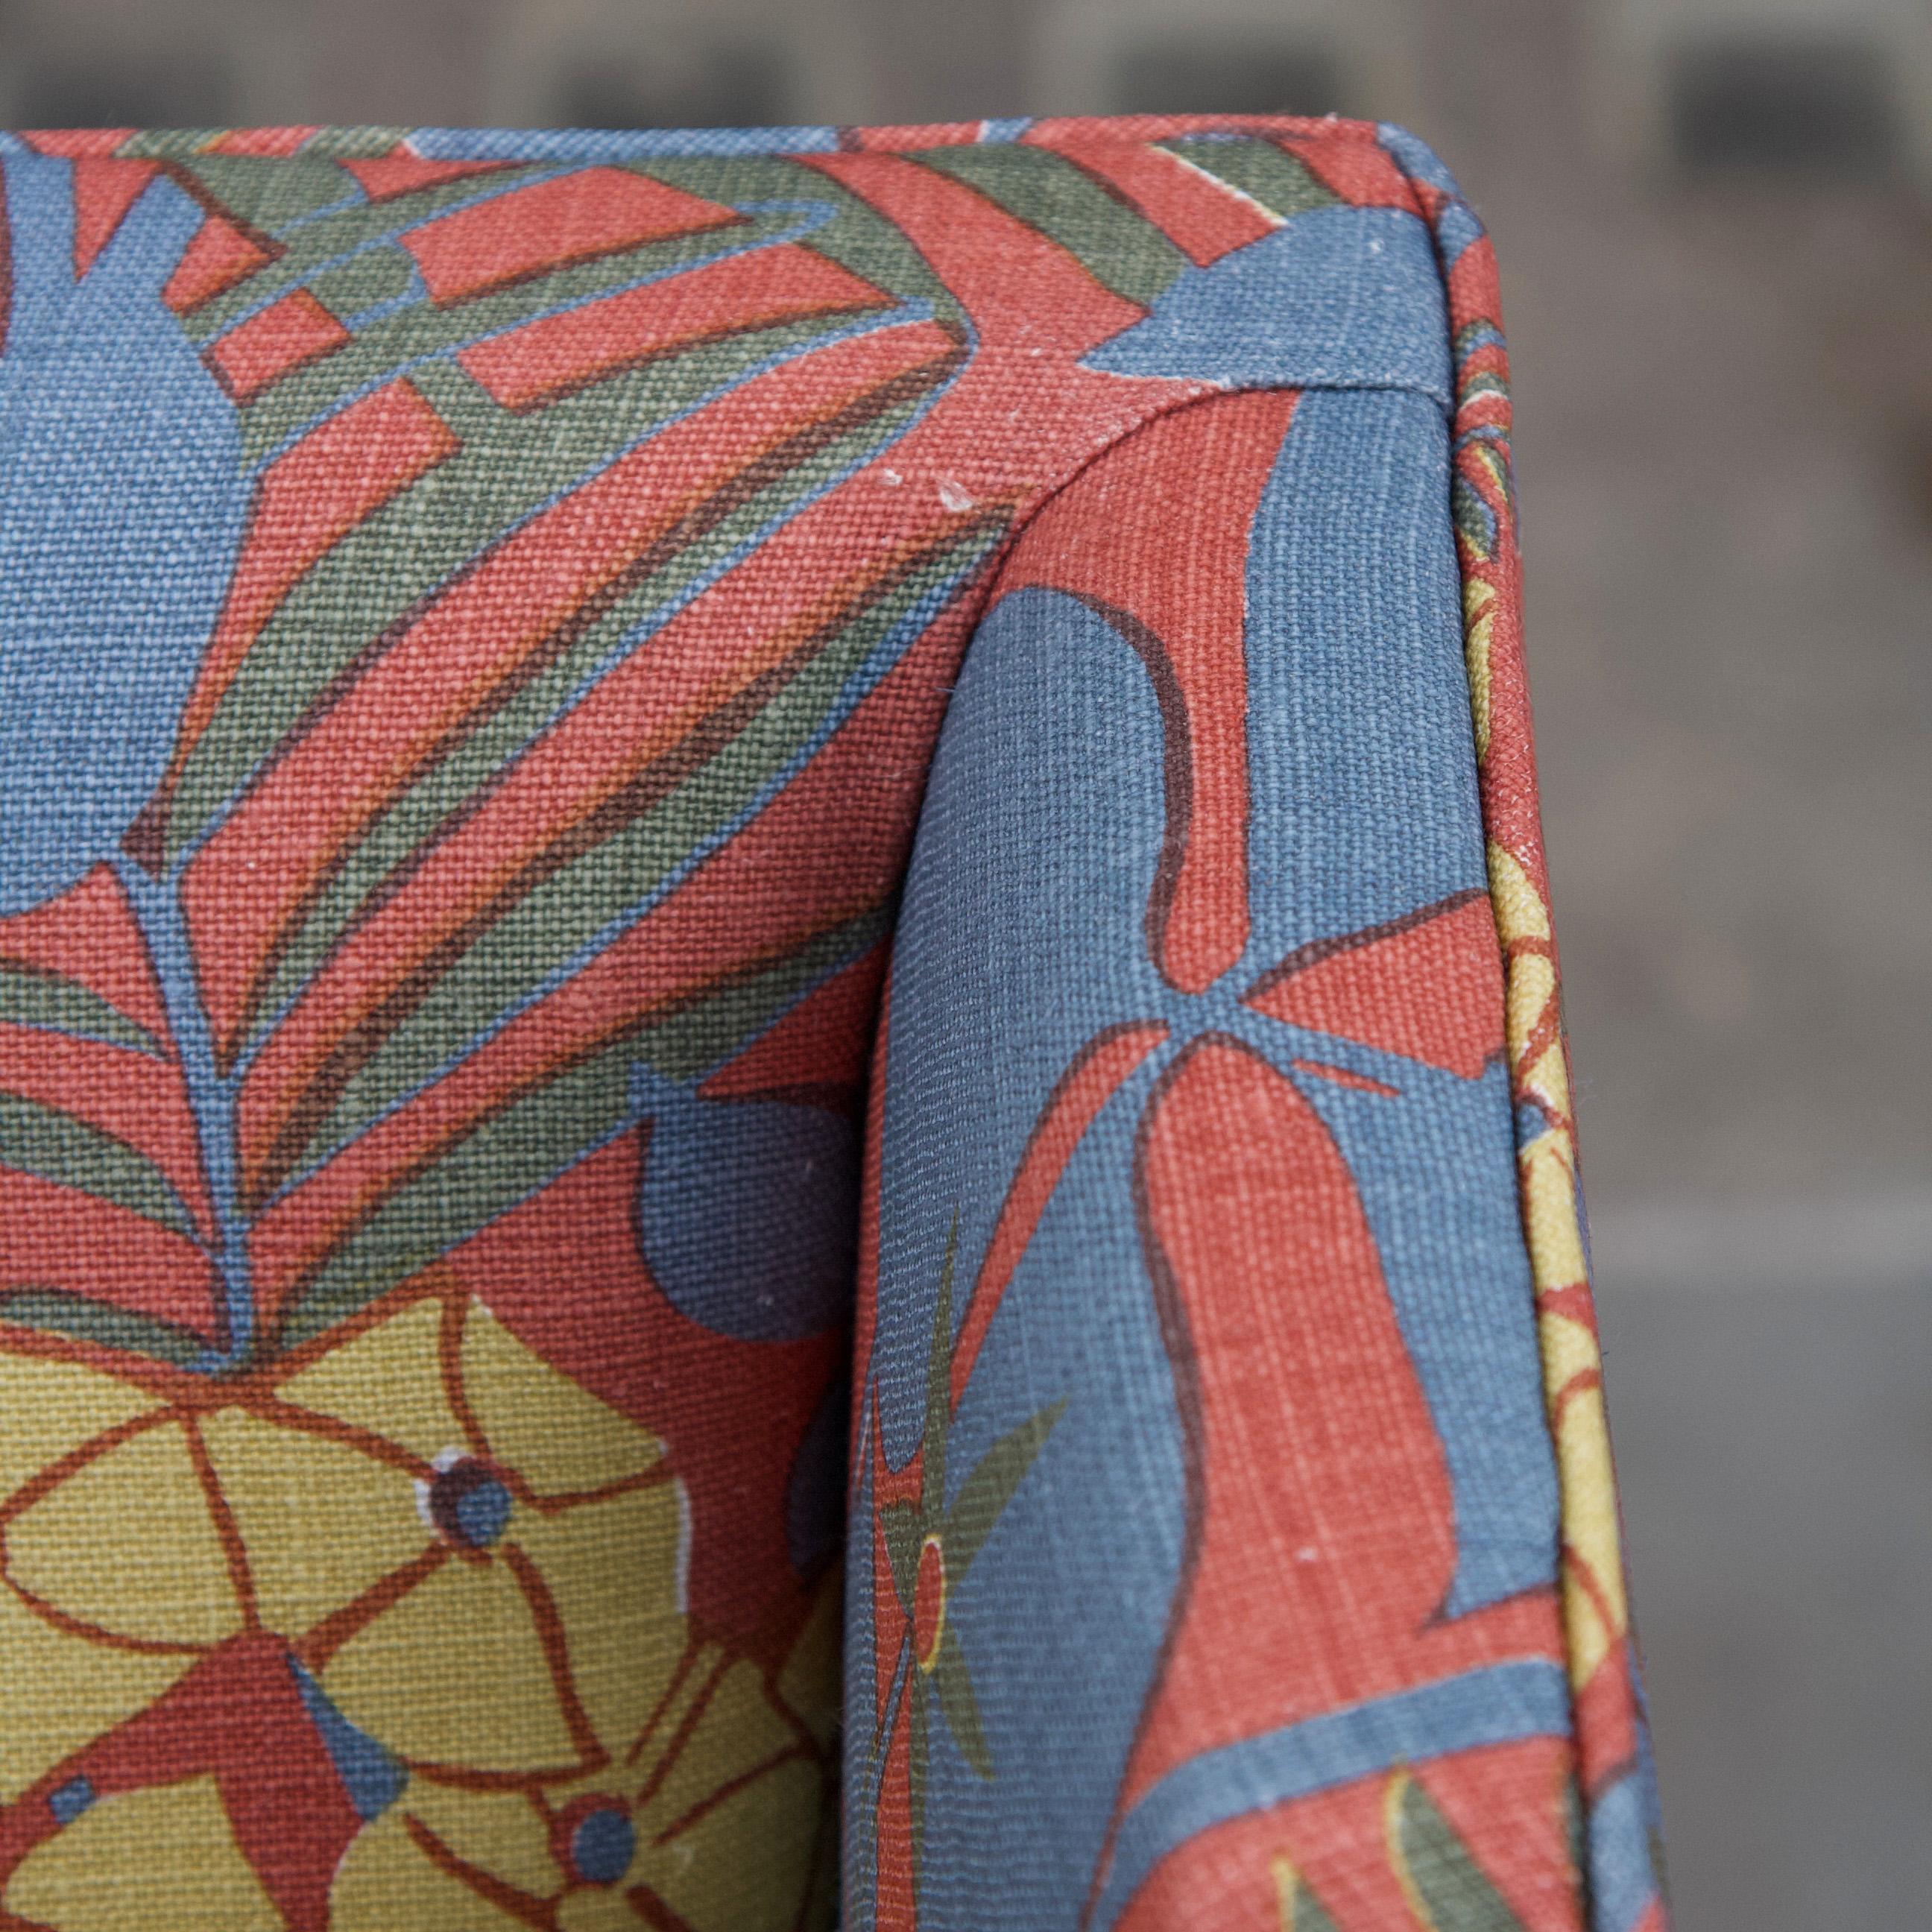 Ce canapé Kaare Klint 4118 reupholstered est la pièce maîtresse de notre récente collaboration avec Marthe Armitage Prints pour le London Design Festival 2023. 

Ce canapé modèle 4118, conçu par Kaare Klint dans les années 1930 et fabriqué par